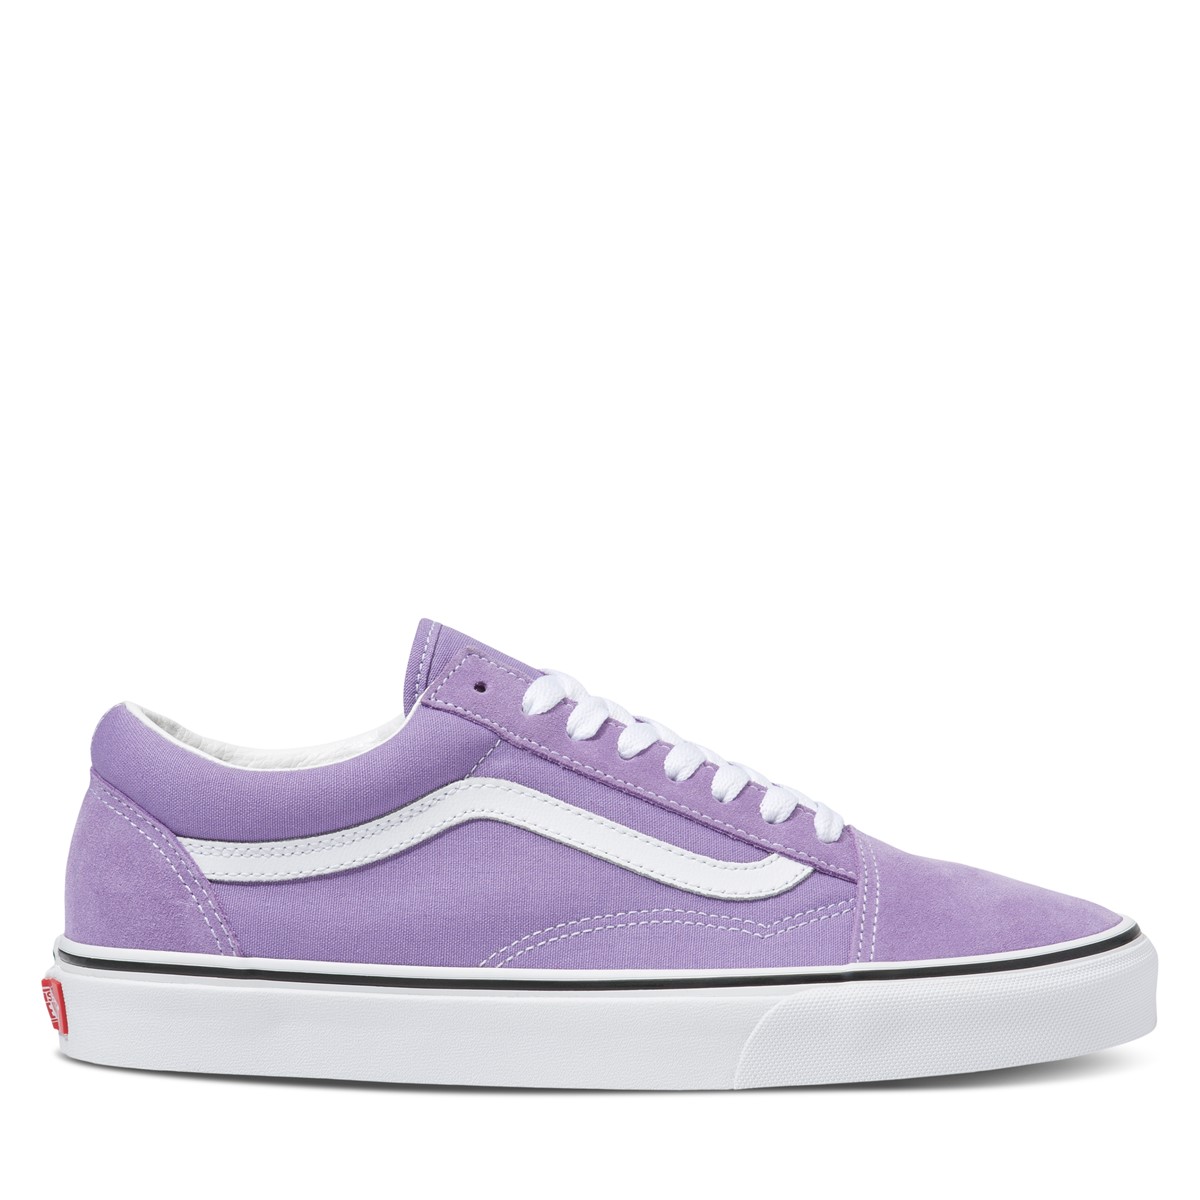 Old Skool Sneakers in Violet